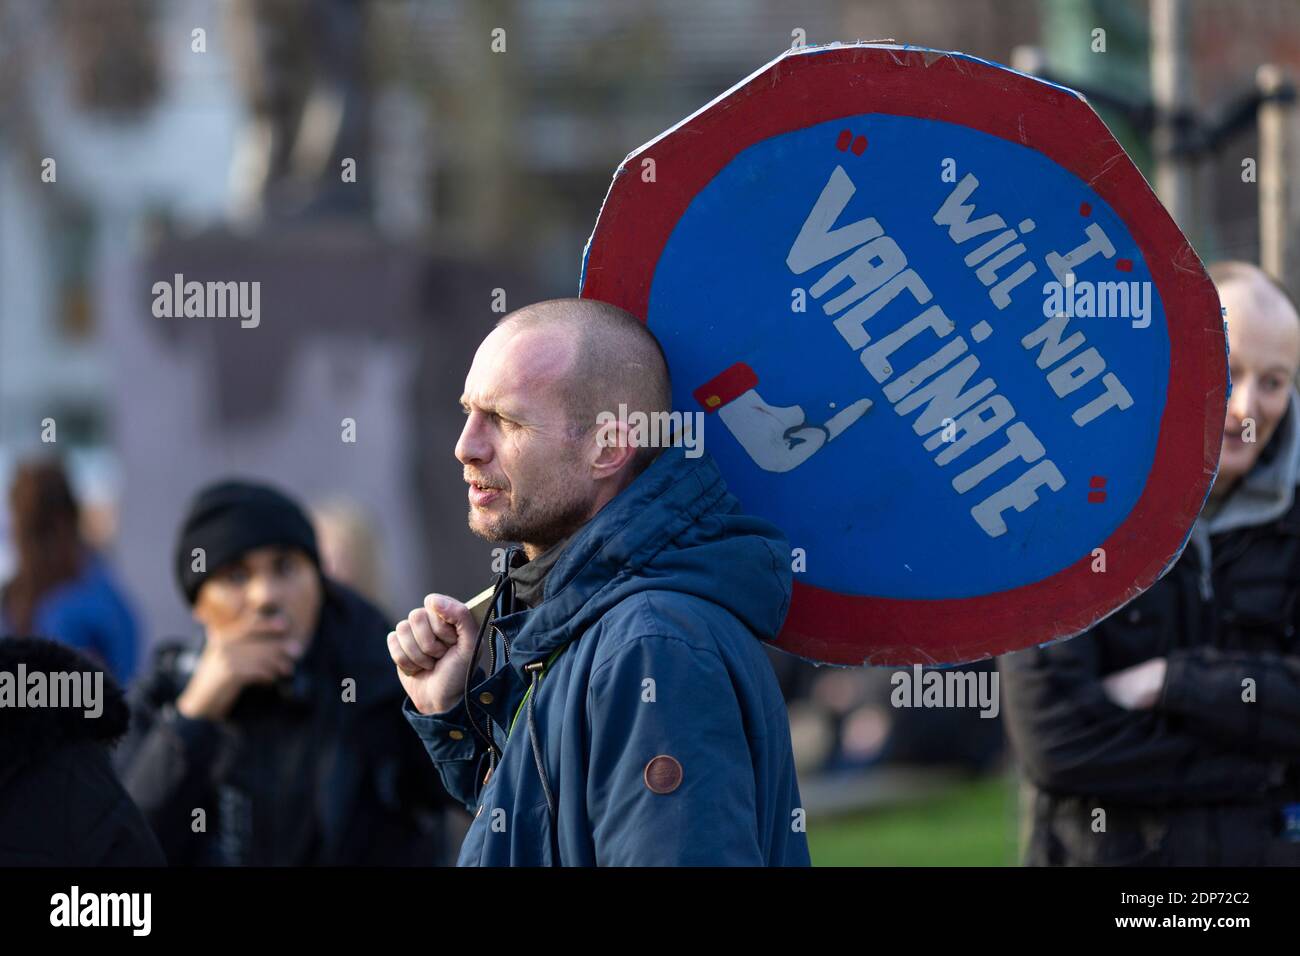 Manifestante sosteniendo un cartel de "no voy a vacunar" durante la protesta contra la vacuna COVID-19, Parliament Square, Londres, 14 de diciembre de 2020 Foto de stock